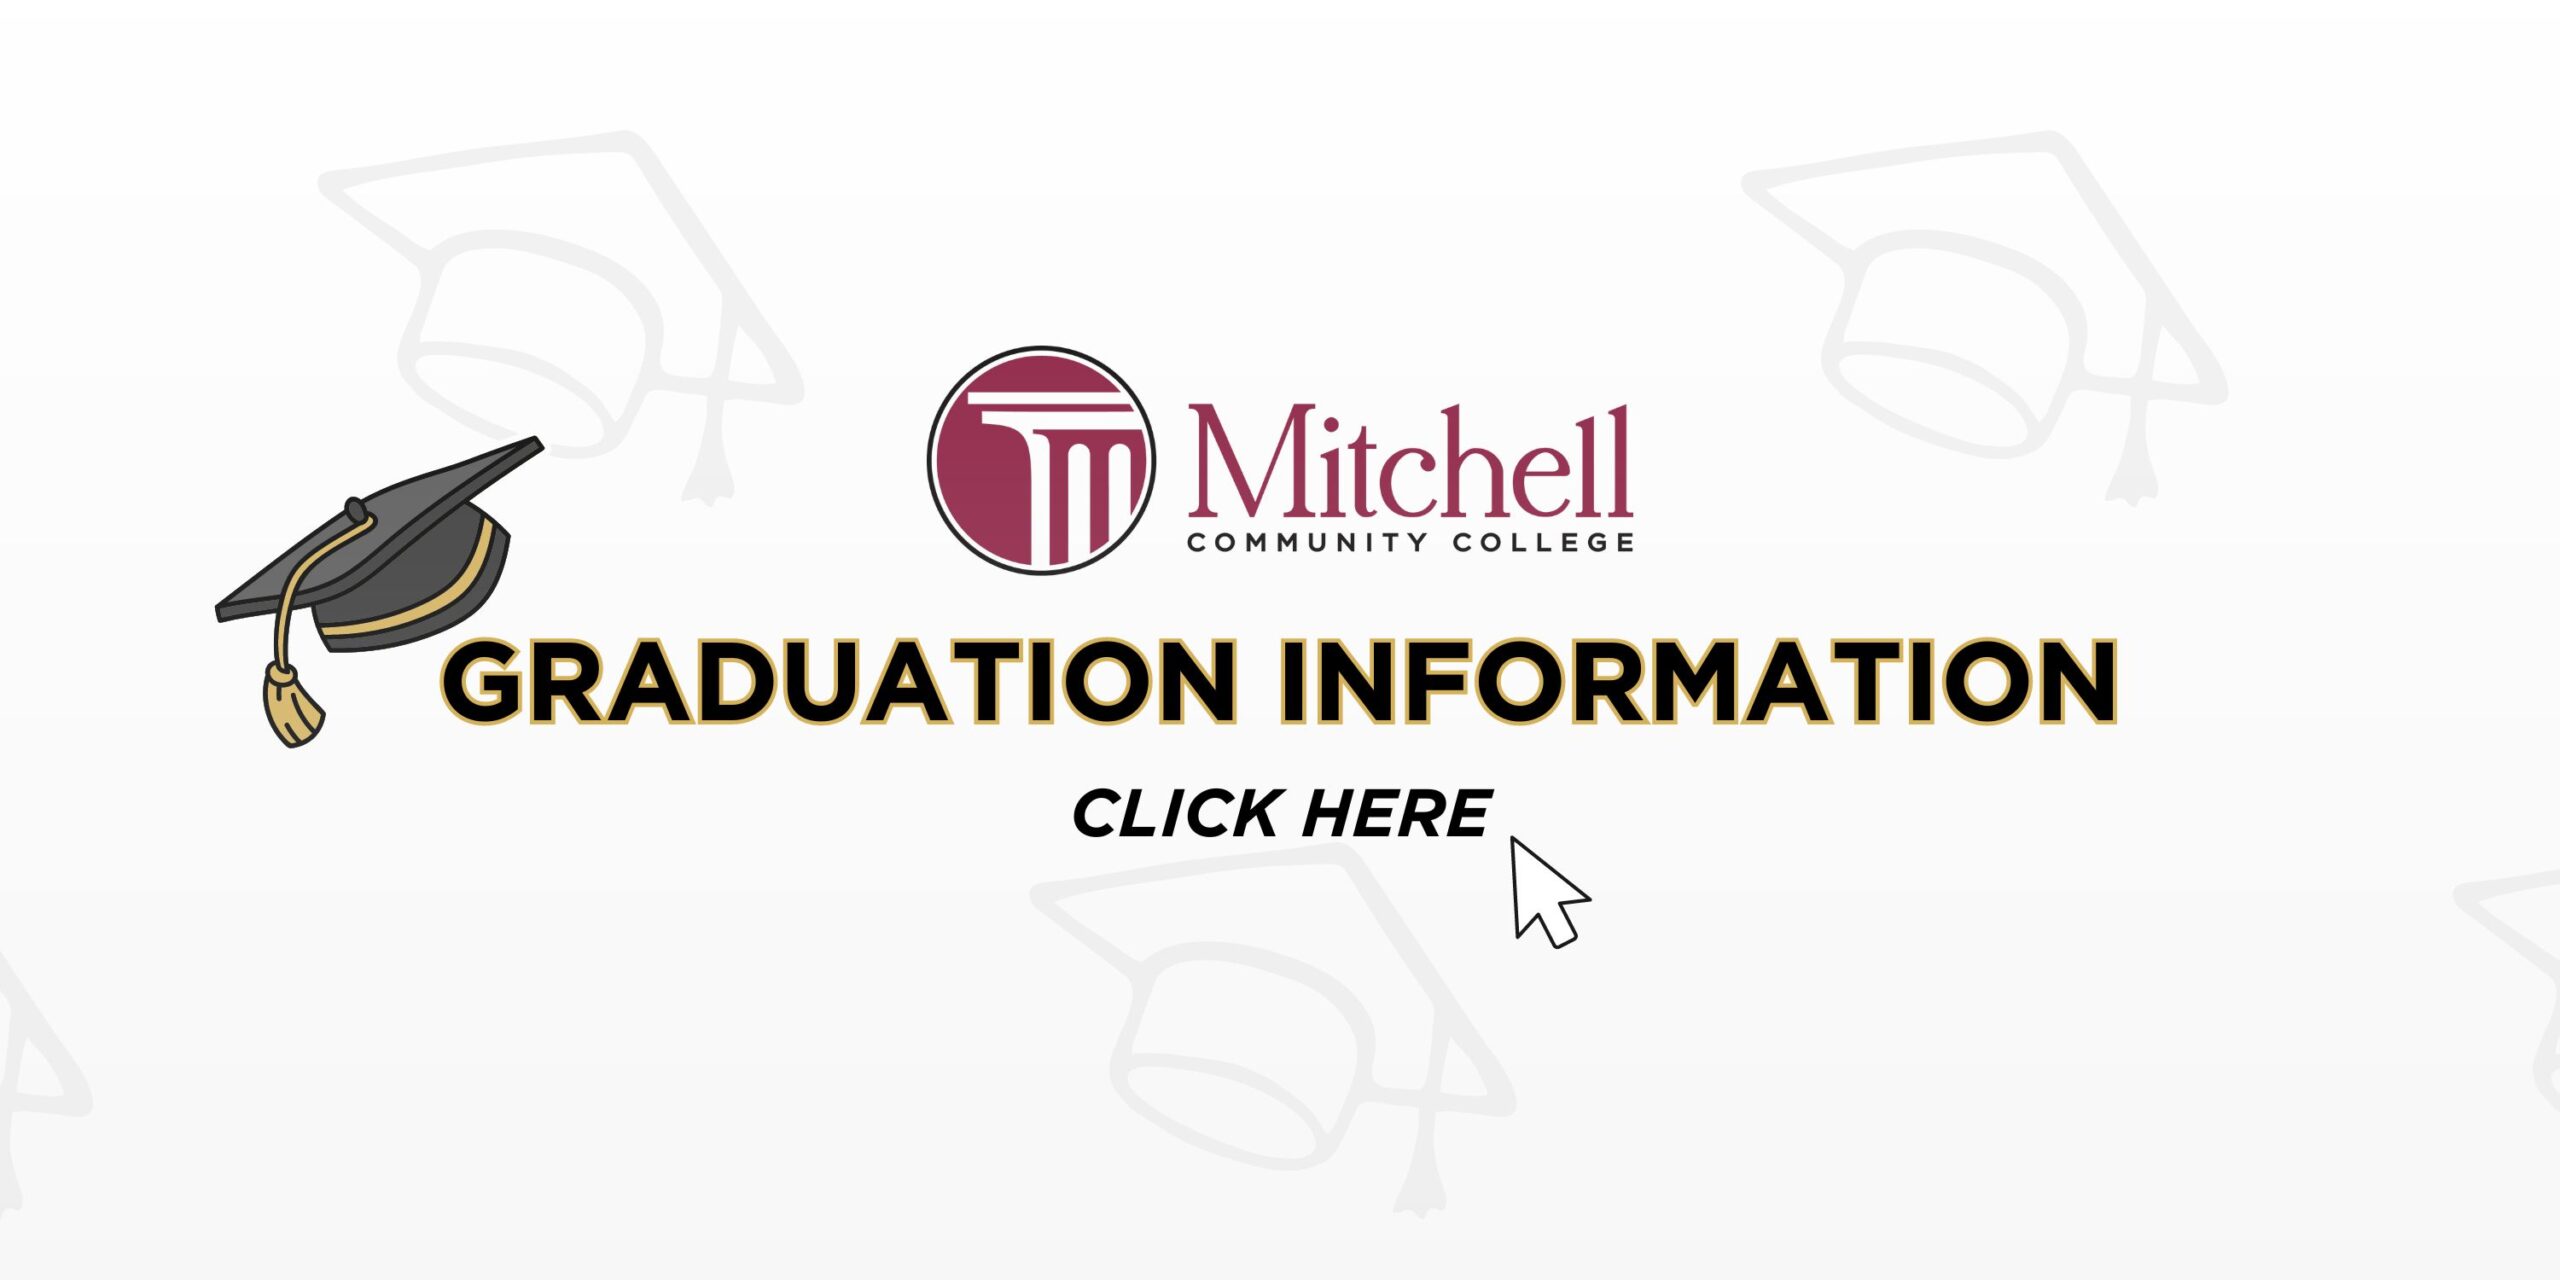 انقر فوق هذا الشعار لمعرفة المزيد حول معلومات التخرج.